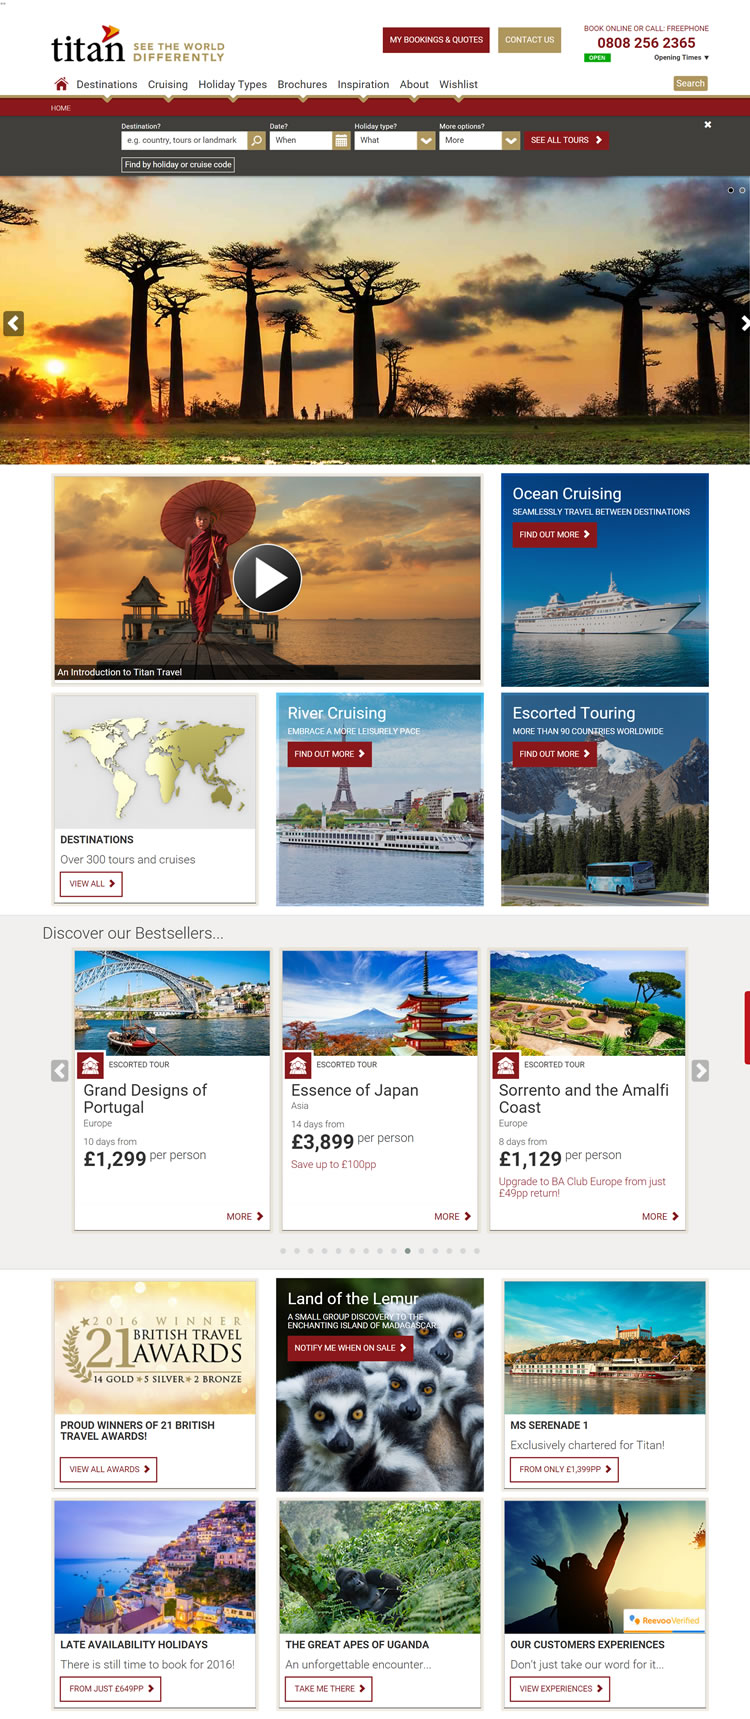 英國泰坦旅遊網站：全球陪同遊覽，郵輪和鐵路旅行 英國購物網站 MeetKK-MeetKK